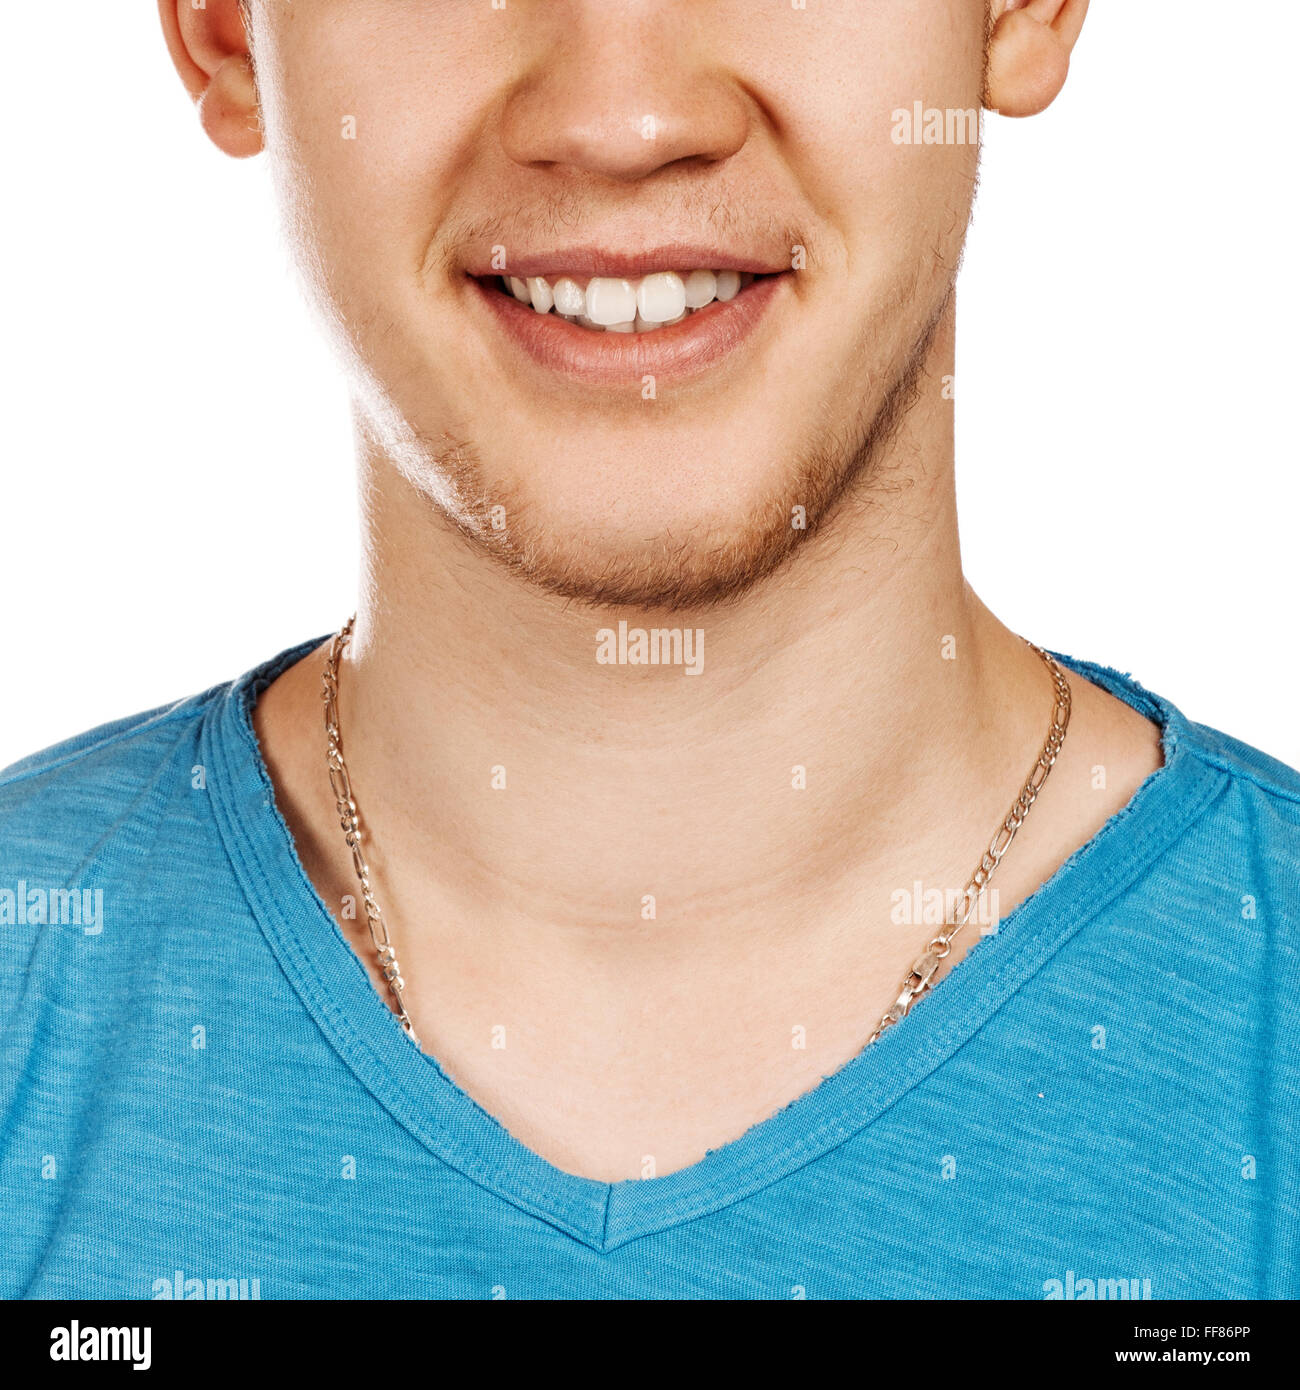 Immagine dettagliata del giovane uomo sorridente con perfetta denti bianchi Foto Stock